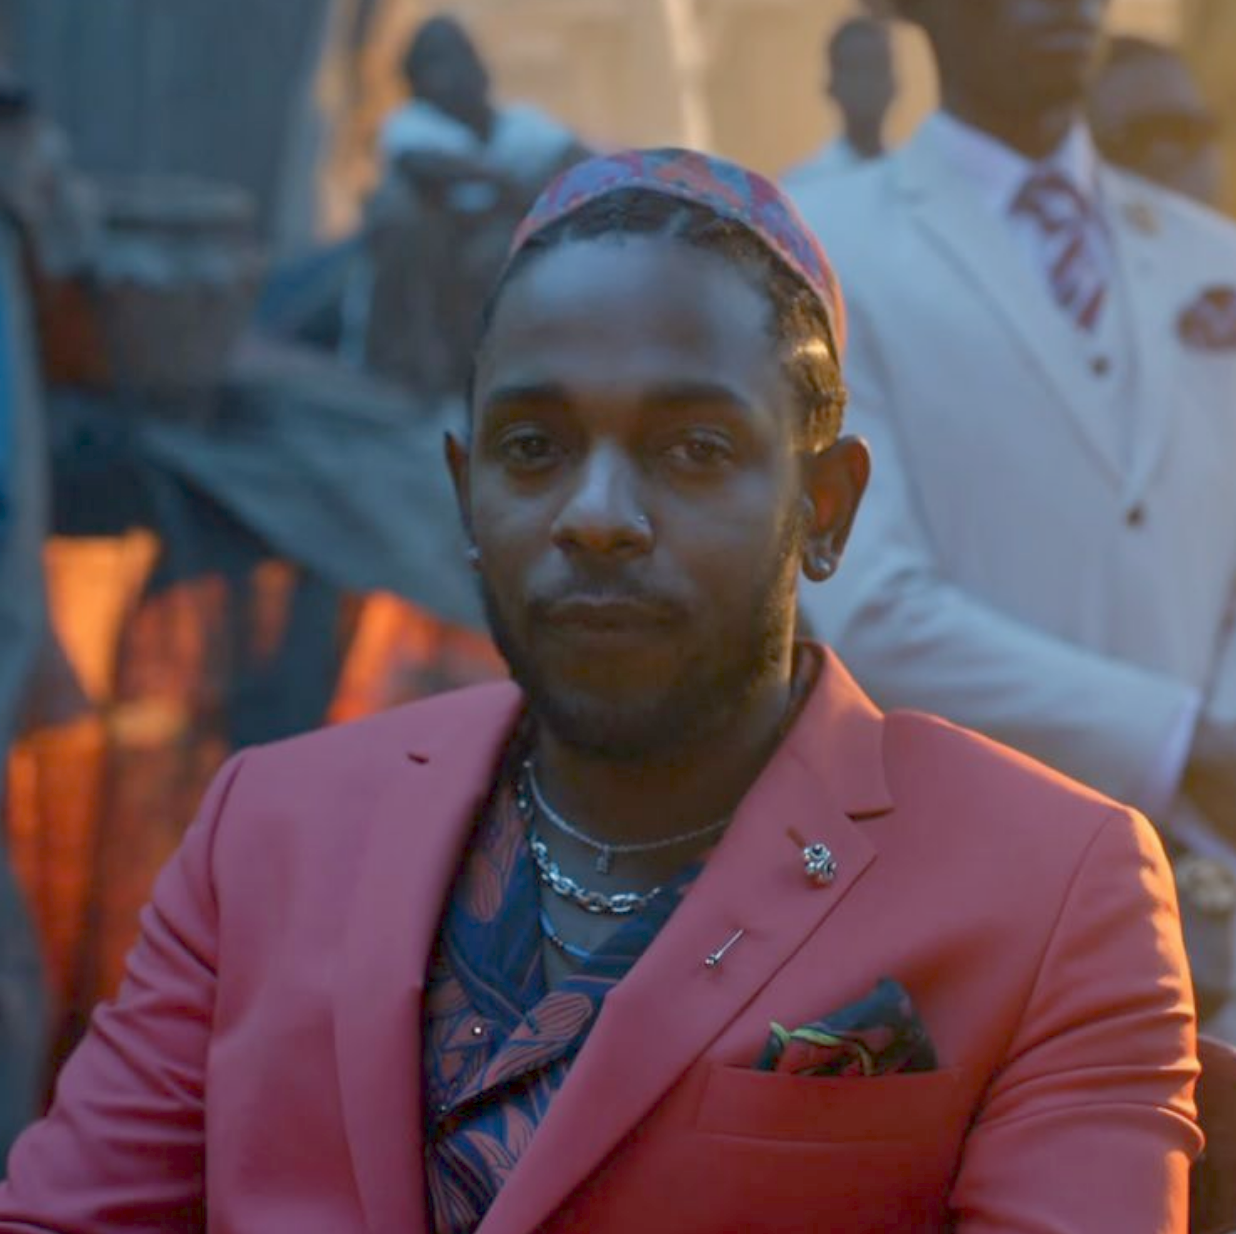 Kendrick Lamar in All the Stars video